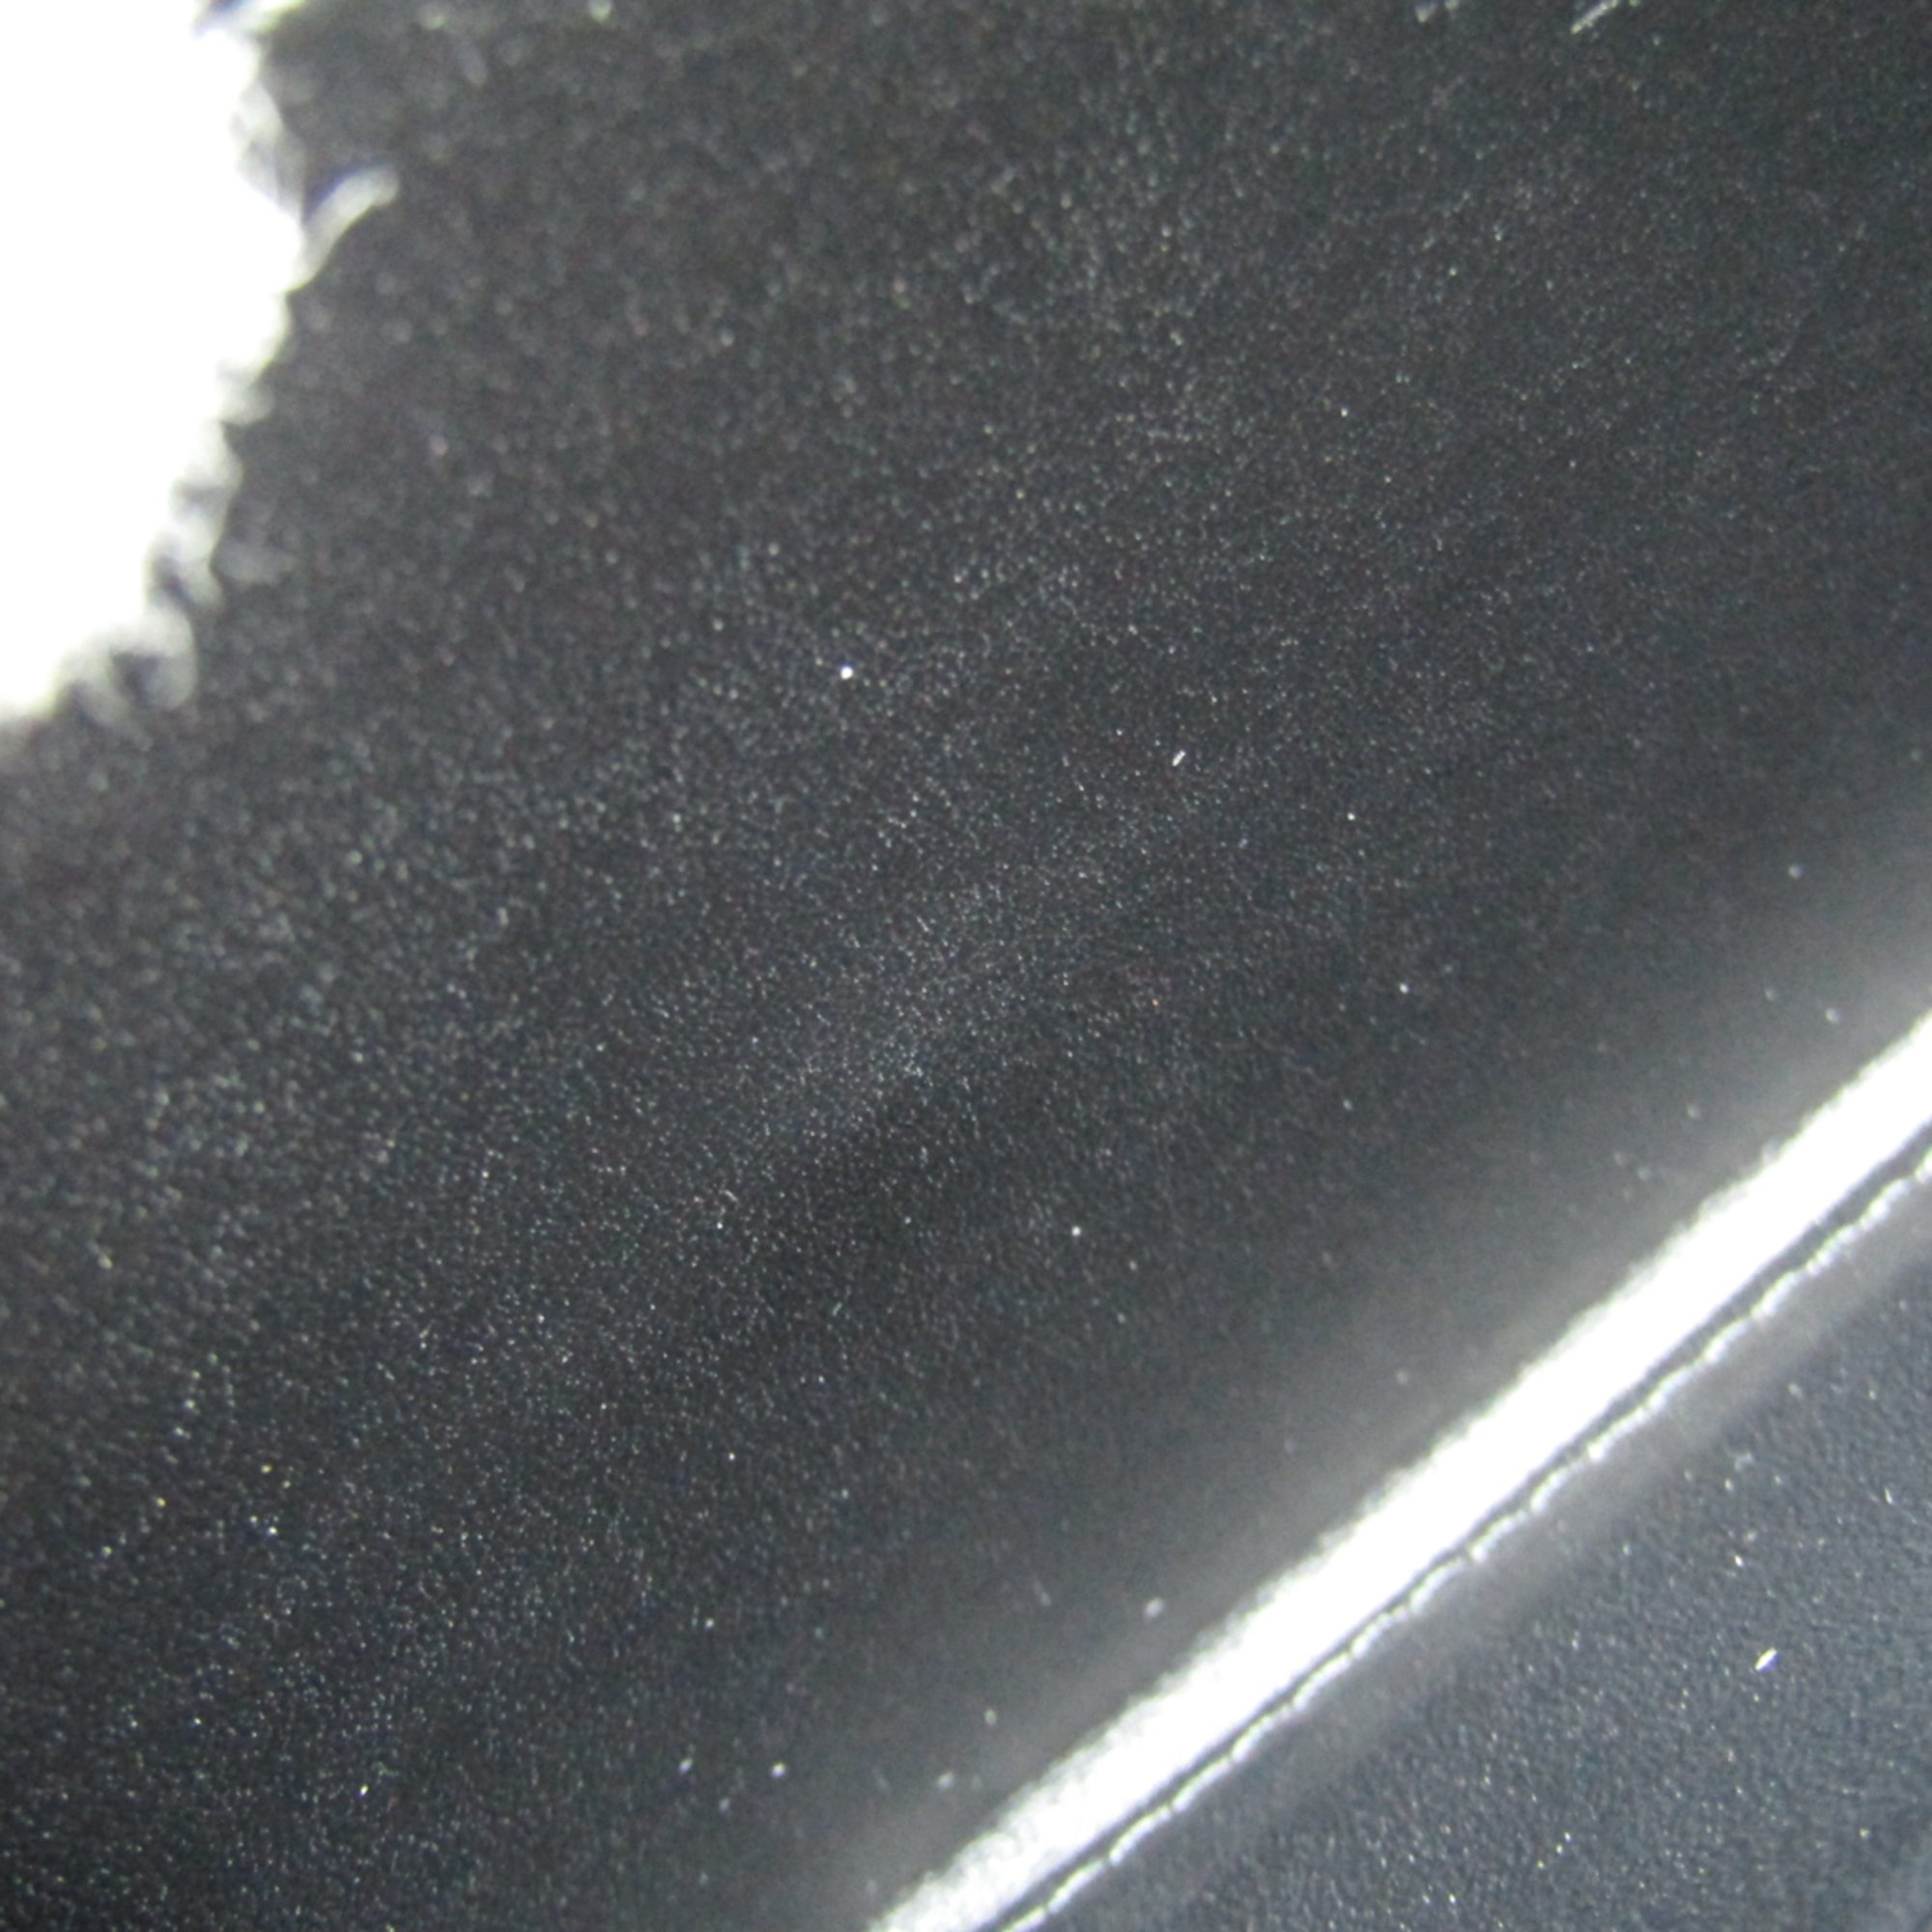 Pelle Morbida Deck/9 Men's Leather Long Bill Wallet (bi-fold) Black